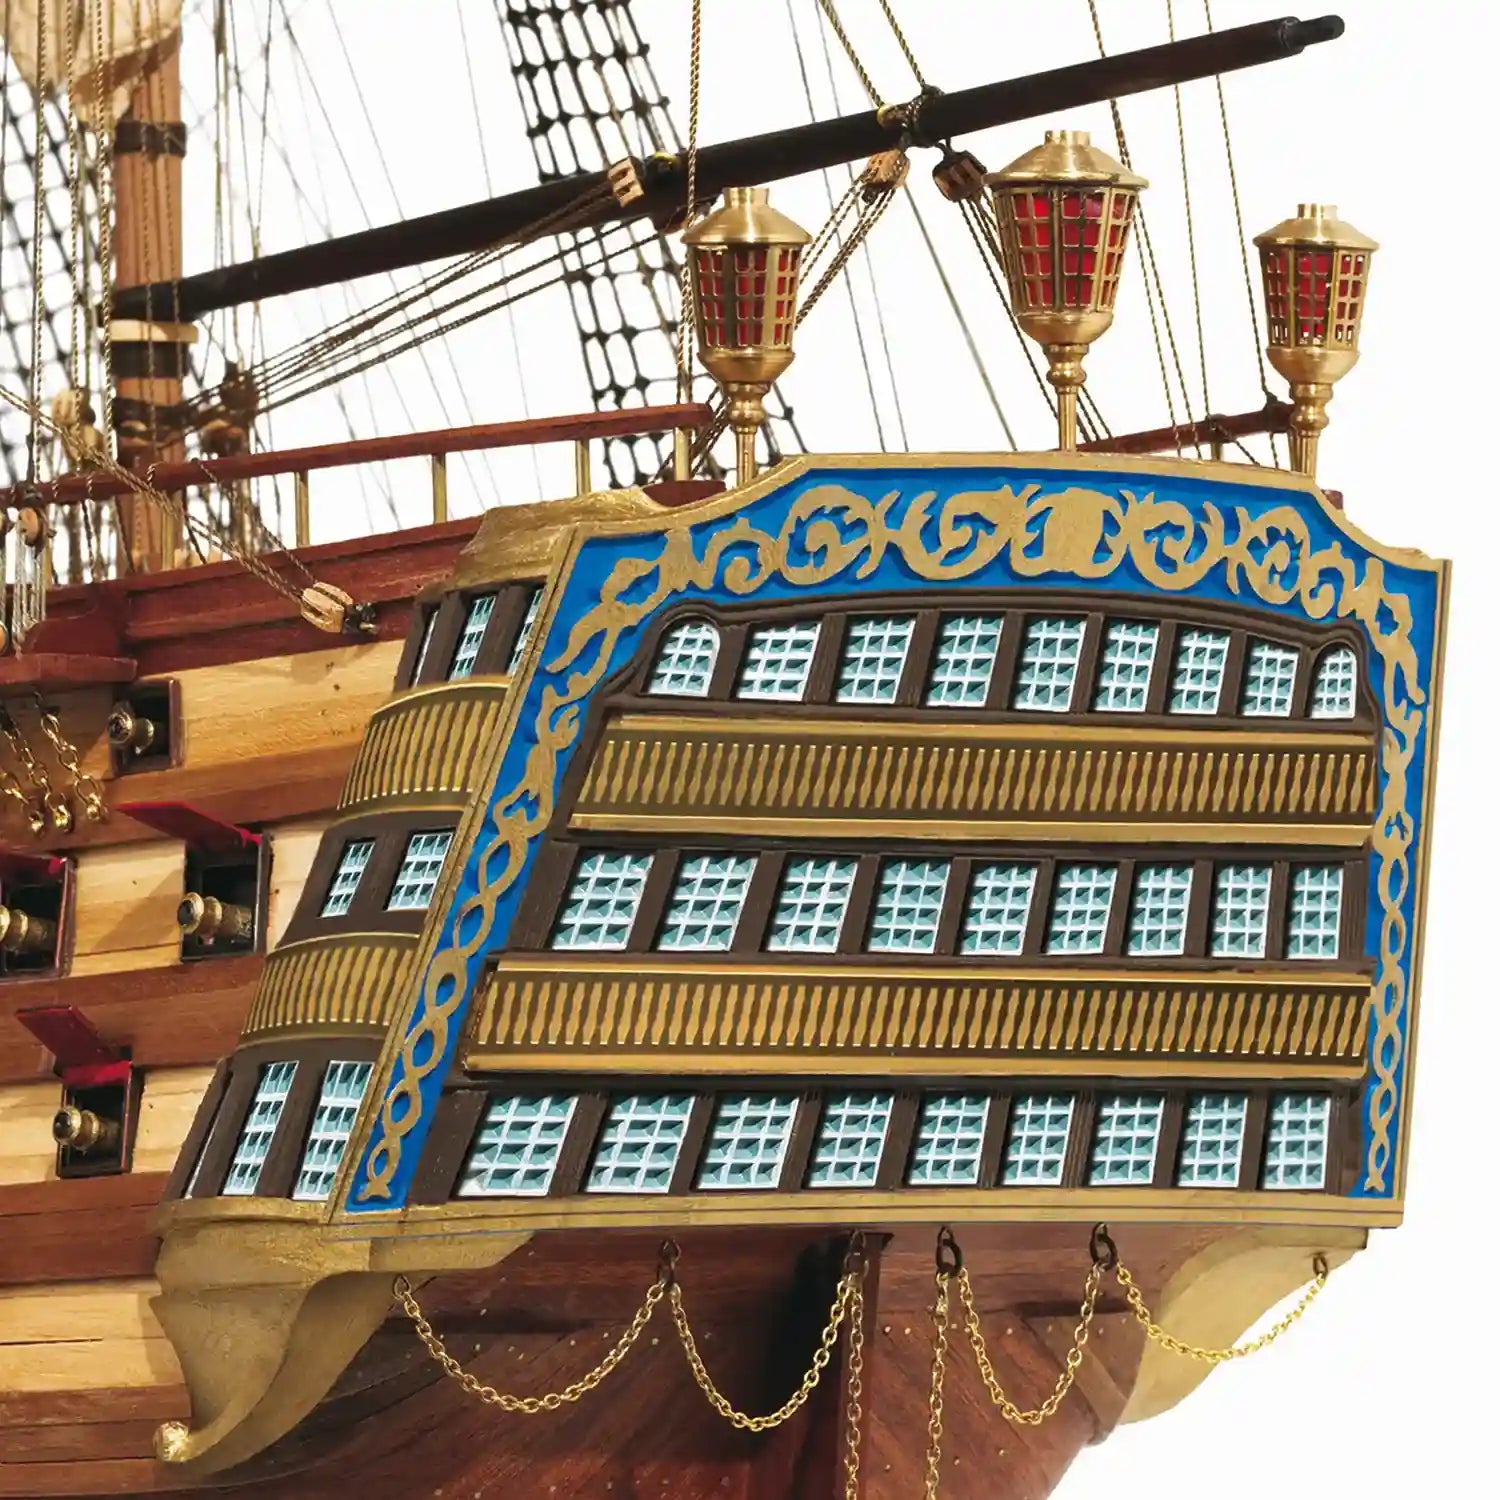 Kit de Maquettes de Bateaux en Coupe Transversale Santisima Trinidad -  Occre (16800) - FR Premier ship Models